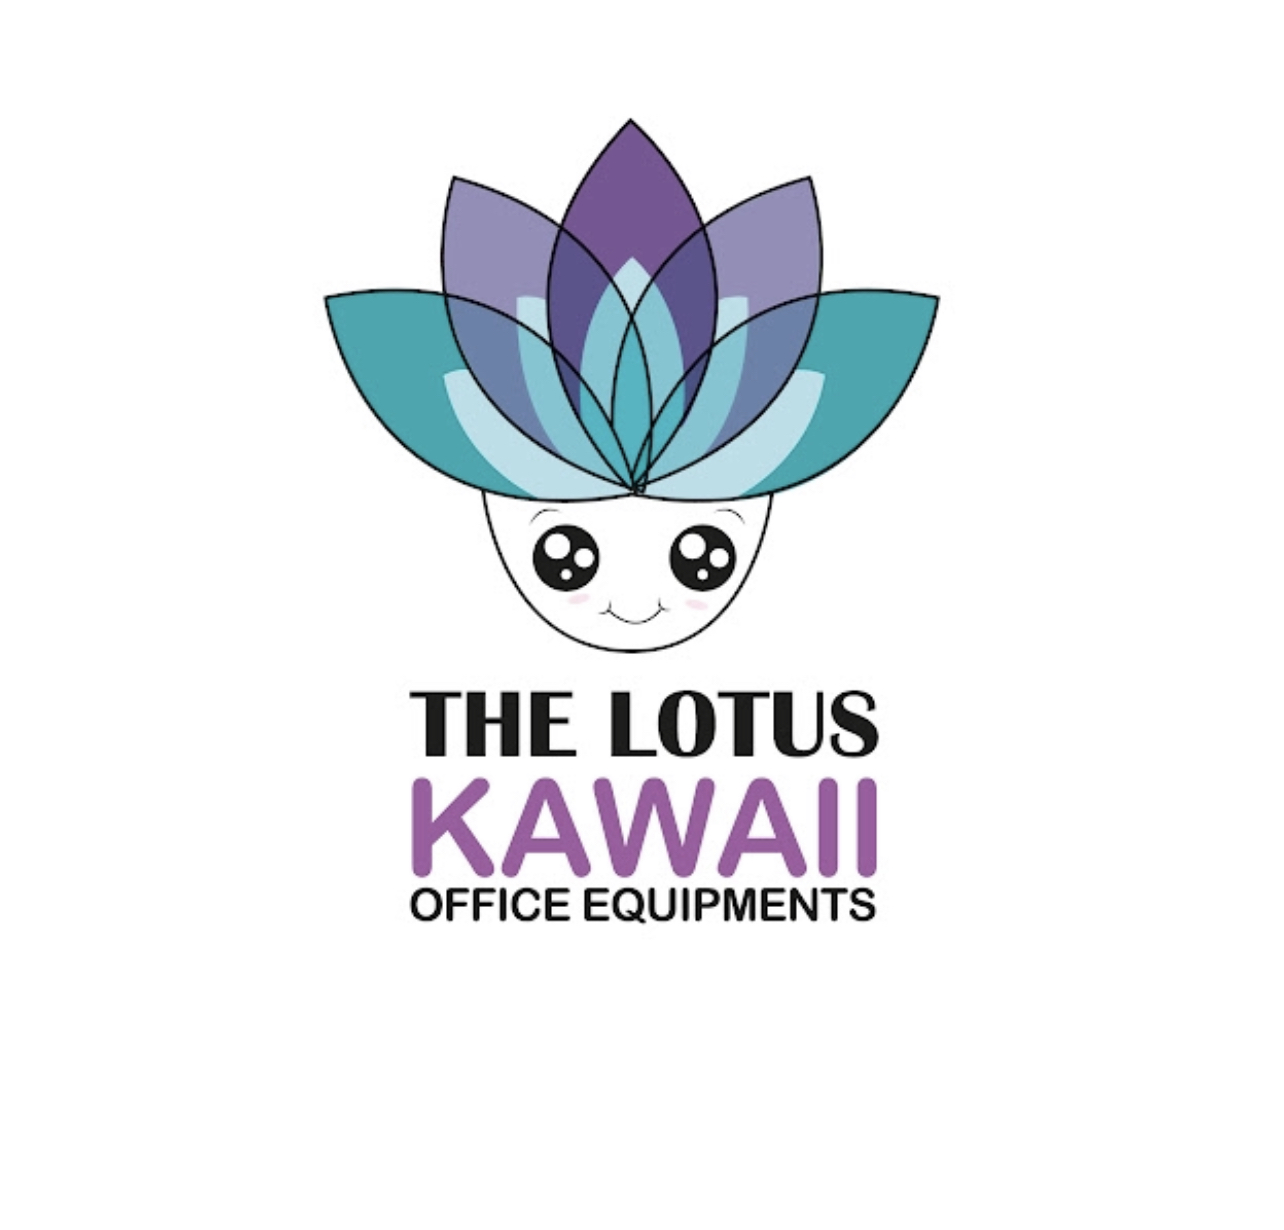 The Lotus Kawaii